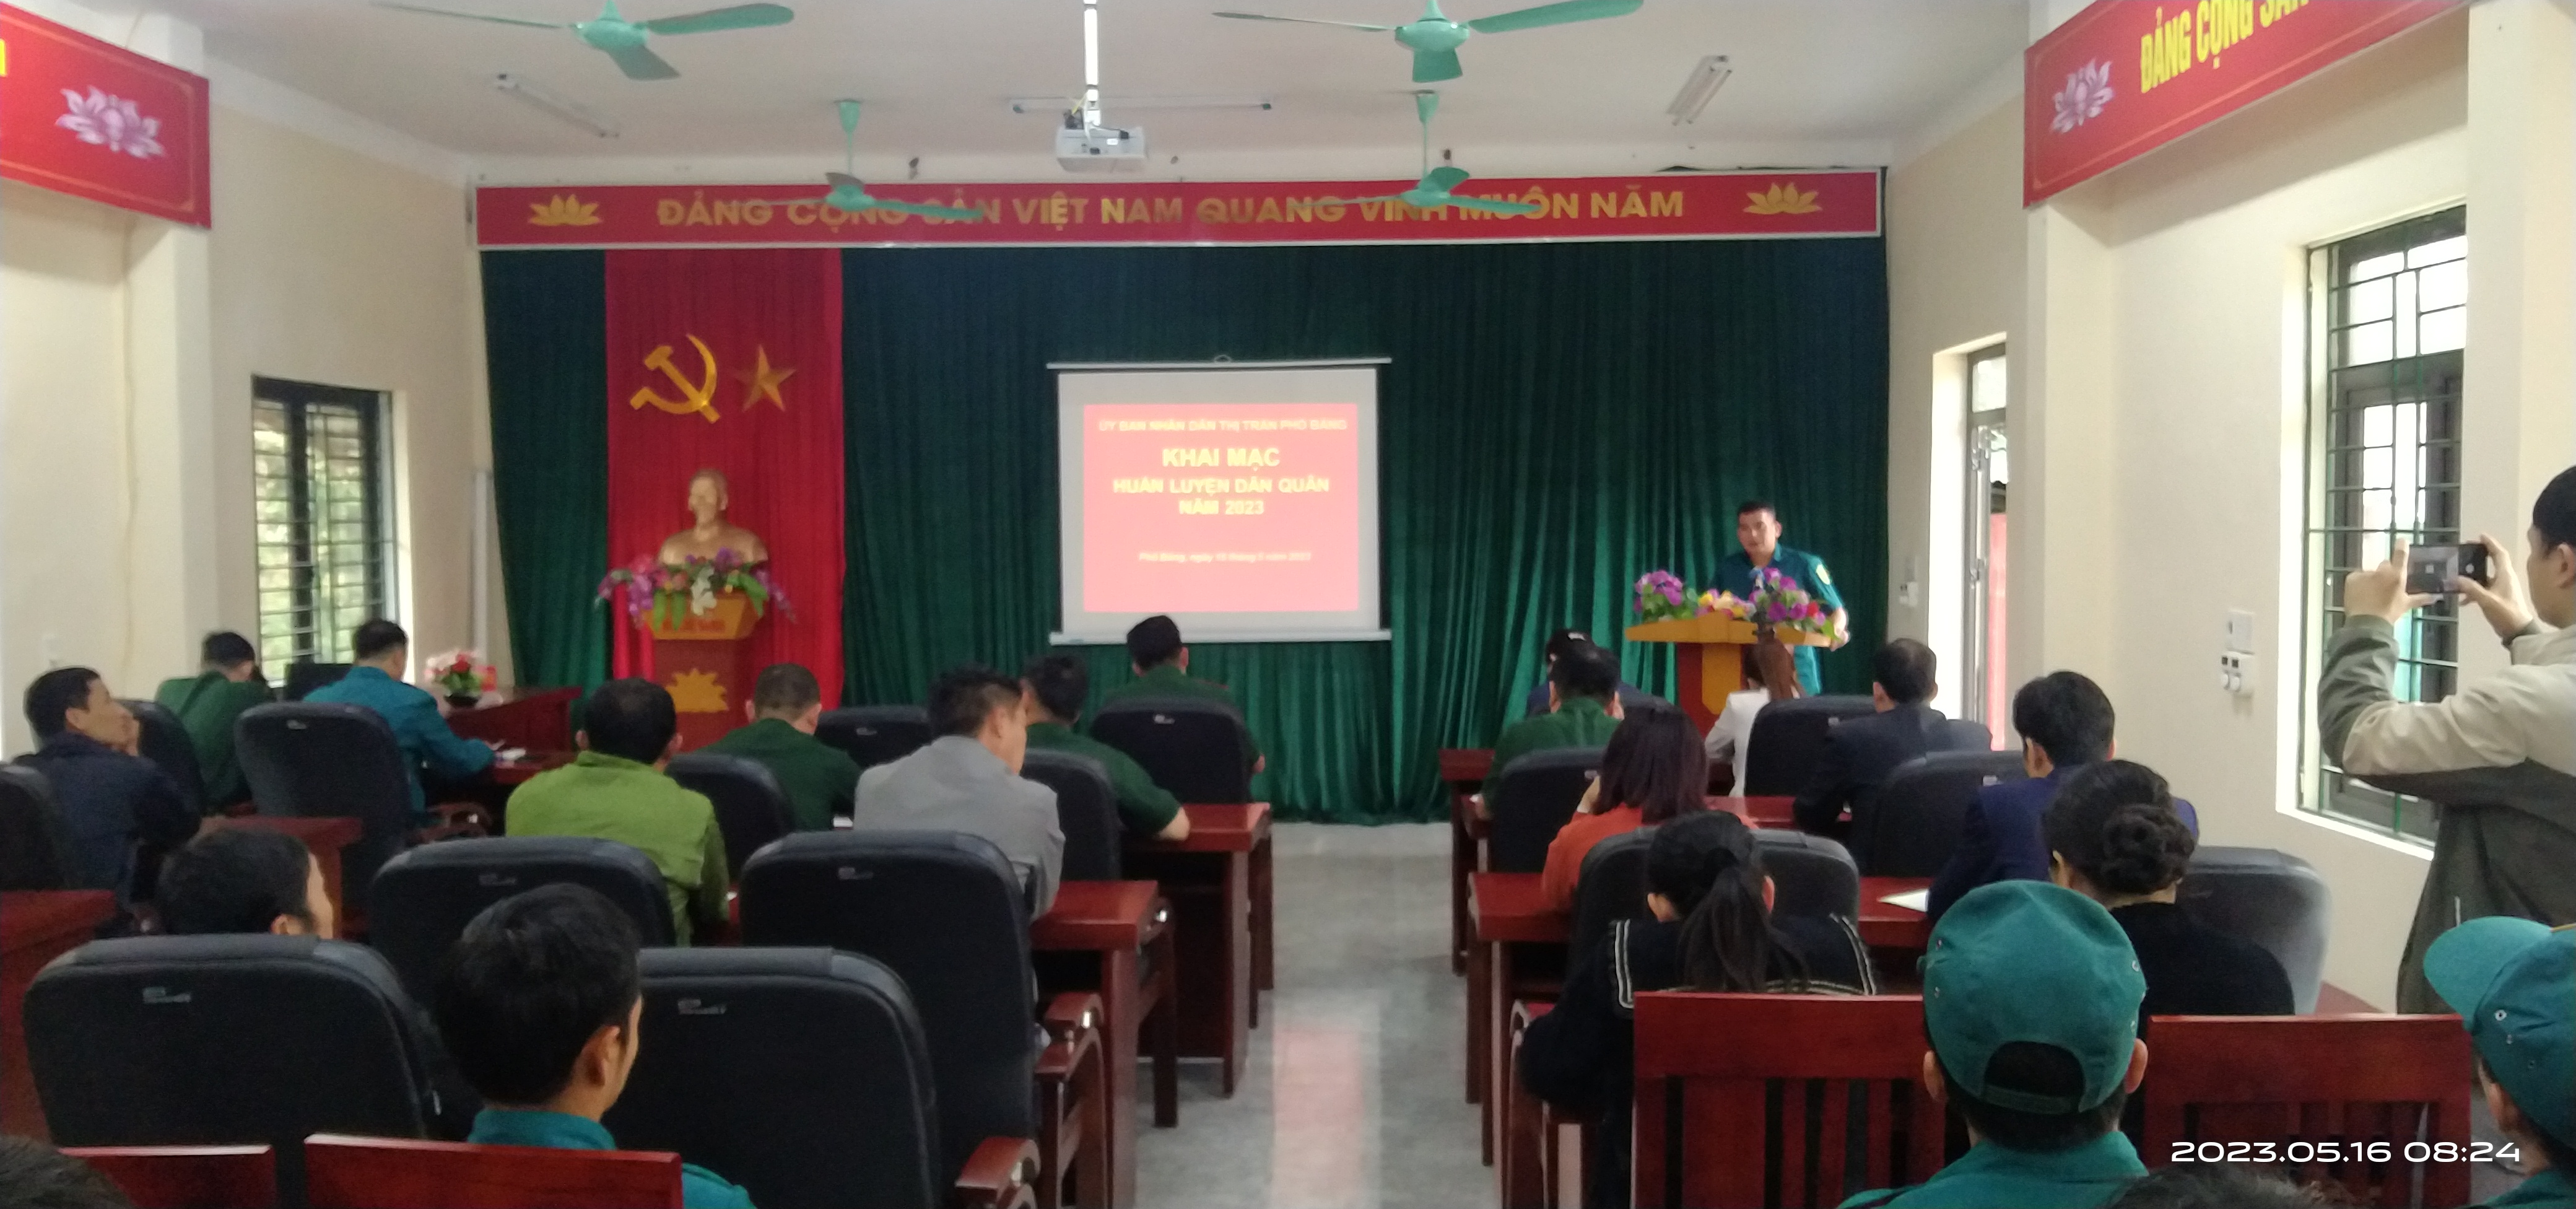 Ban Chỉ huy quân sự thị trấn Phố Bảng tổ chức khai mạc huấn luyện dân quân năm 2023